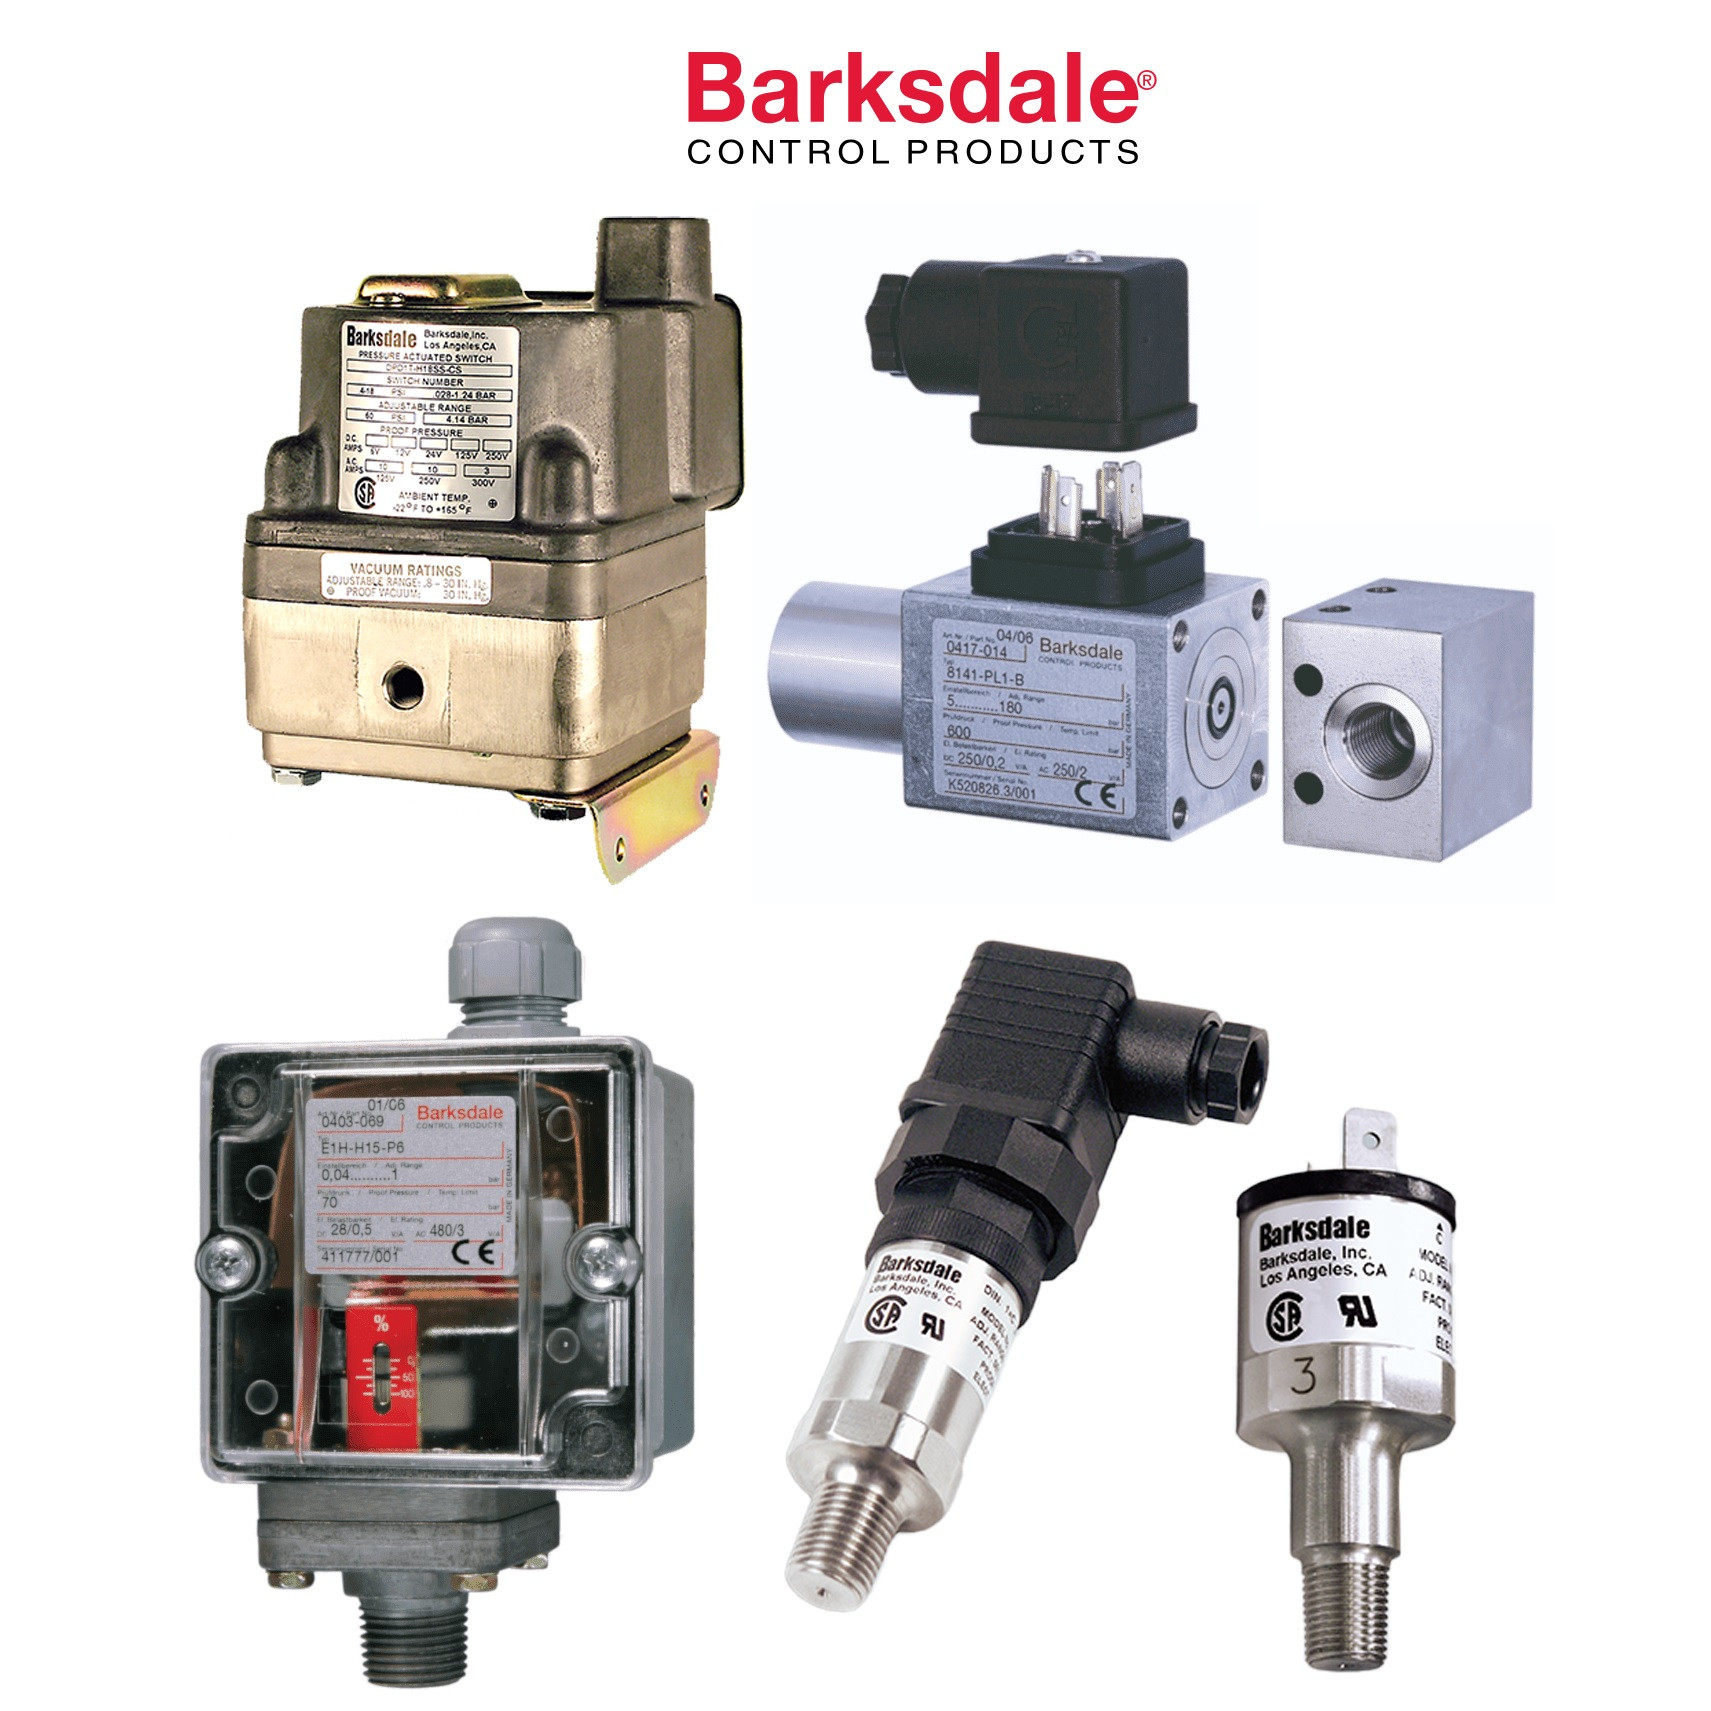 Barksdale XT-R12 1250 >= Lm > 1000 Level Transmitter